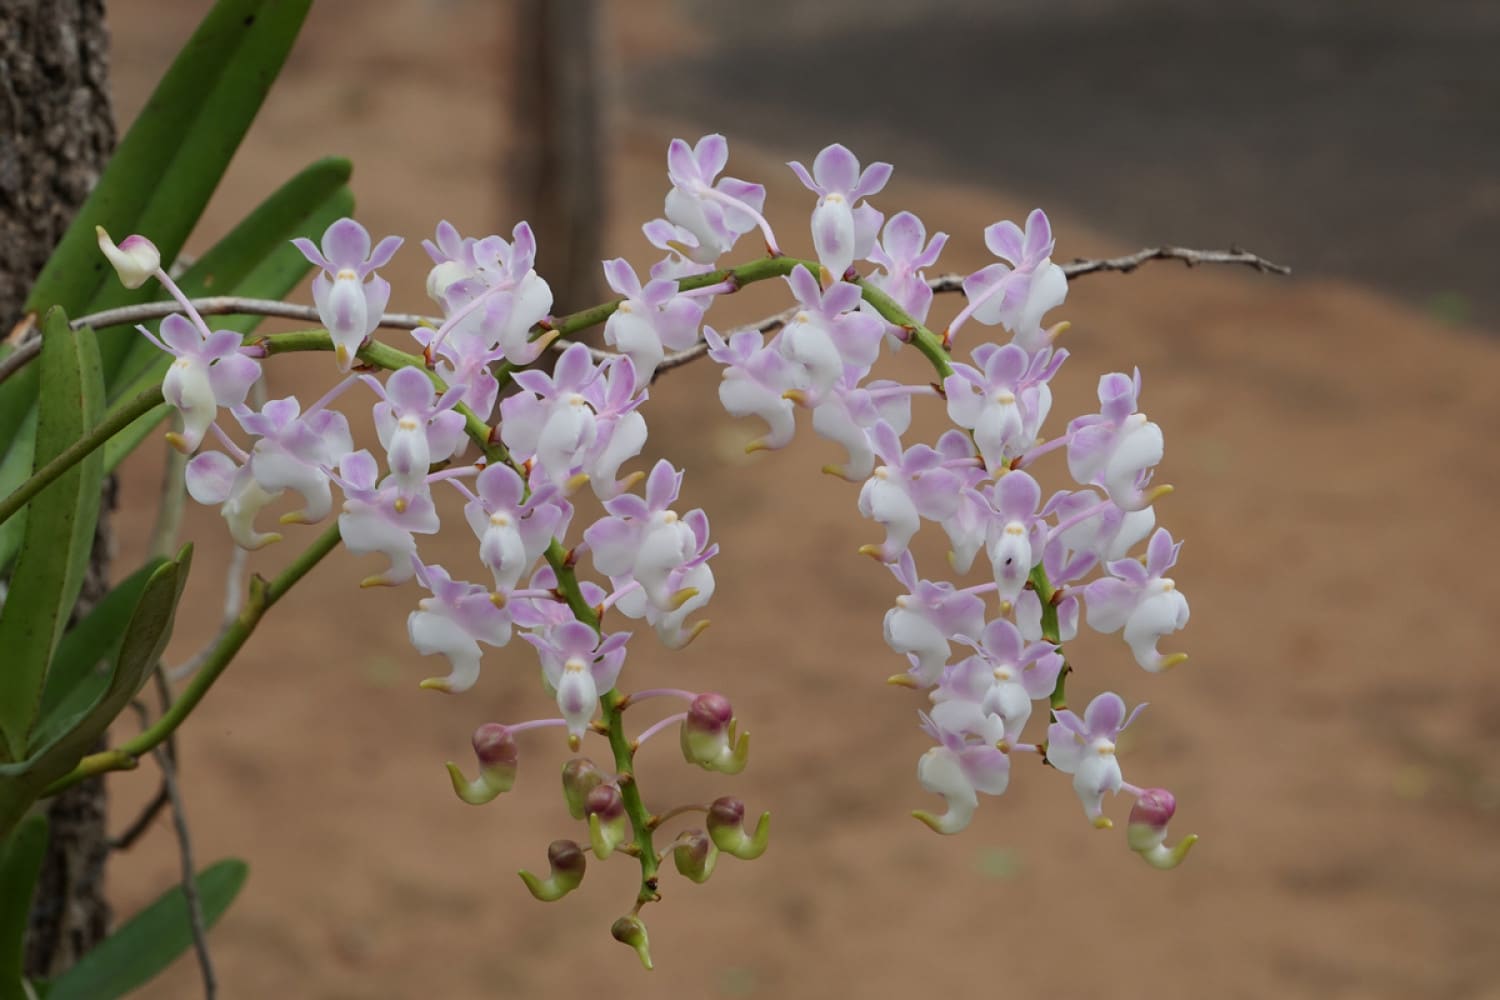  Орхидеја со куклички очи: Одгледувајте ги овие нежни и шармантни цвеќиња во вашата градина